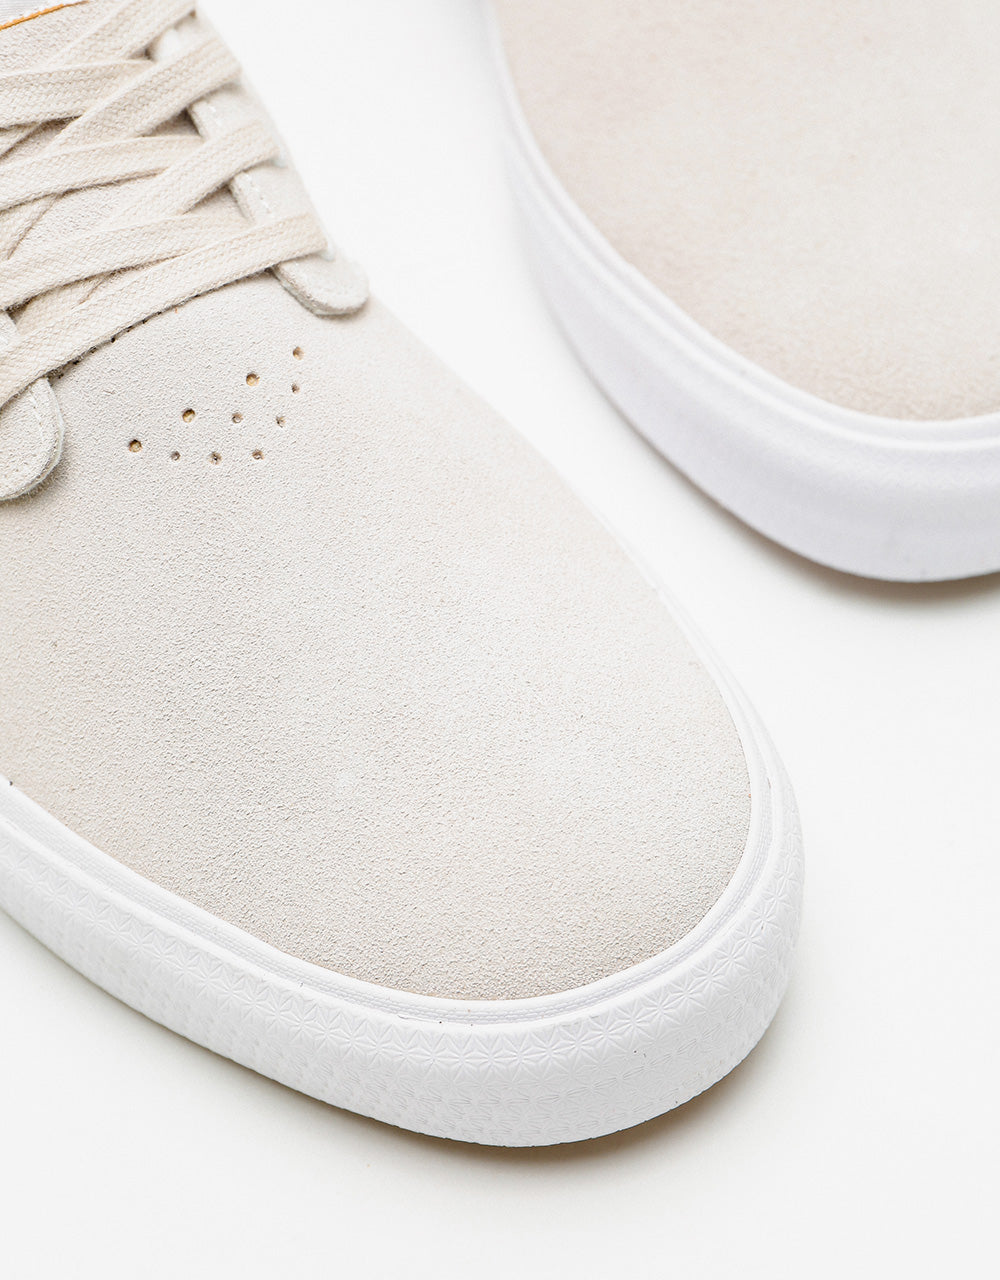 Axion Hampton Skate Shoes - White/White